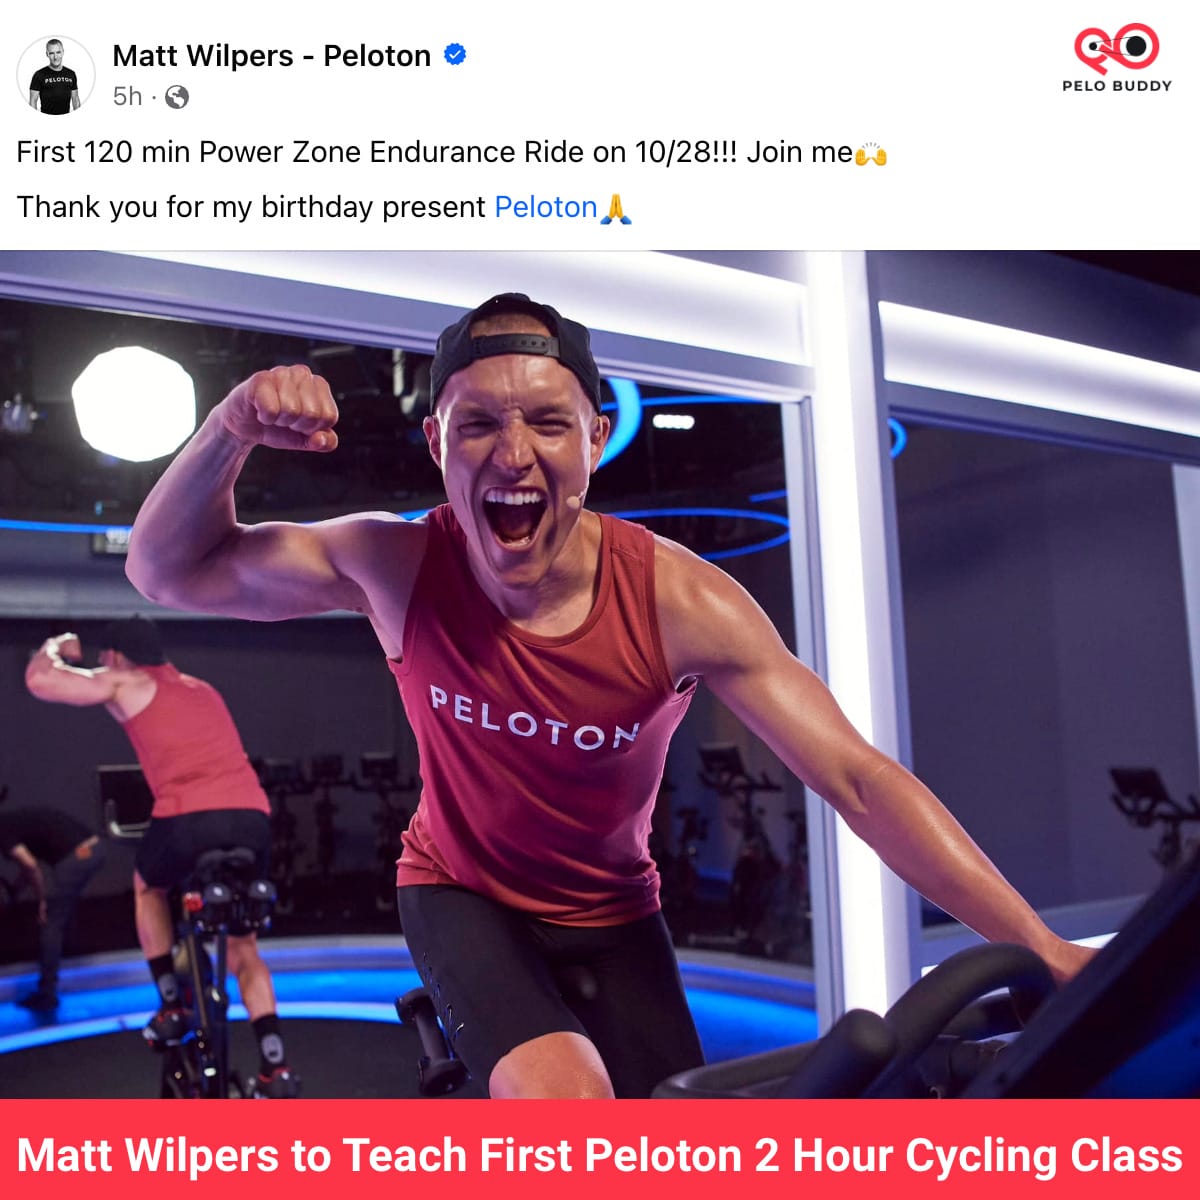 Matt Wilpers to Teach Peloton 2 Hour Cycling Class - Peloton Buddy